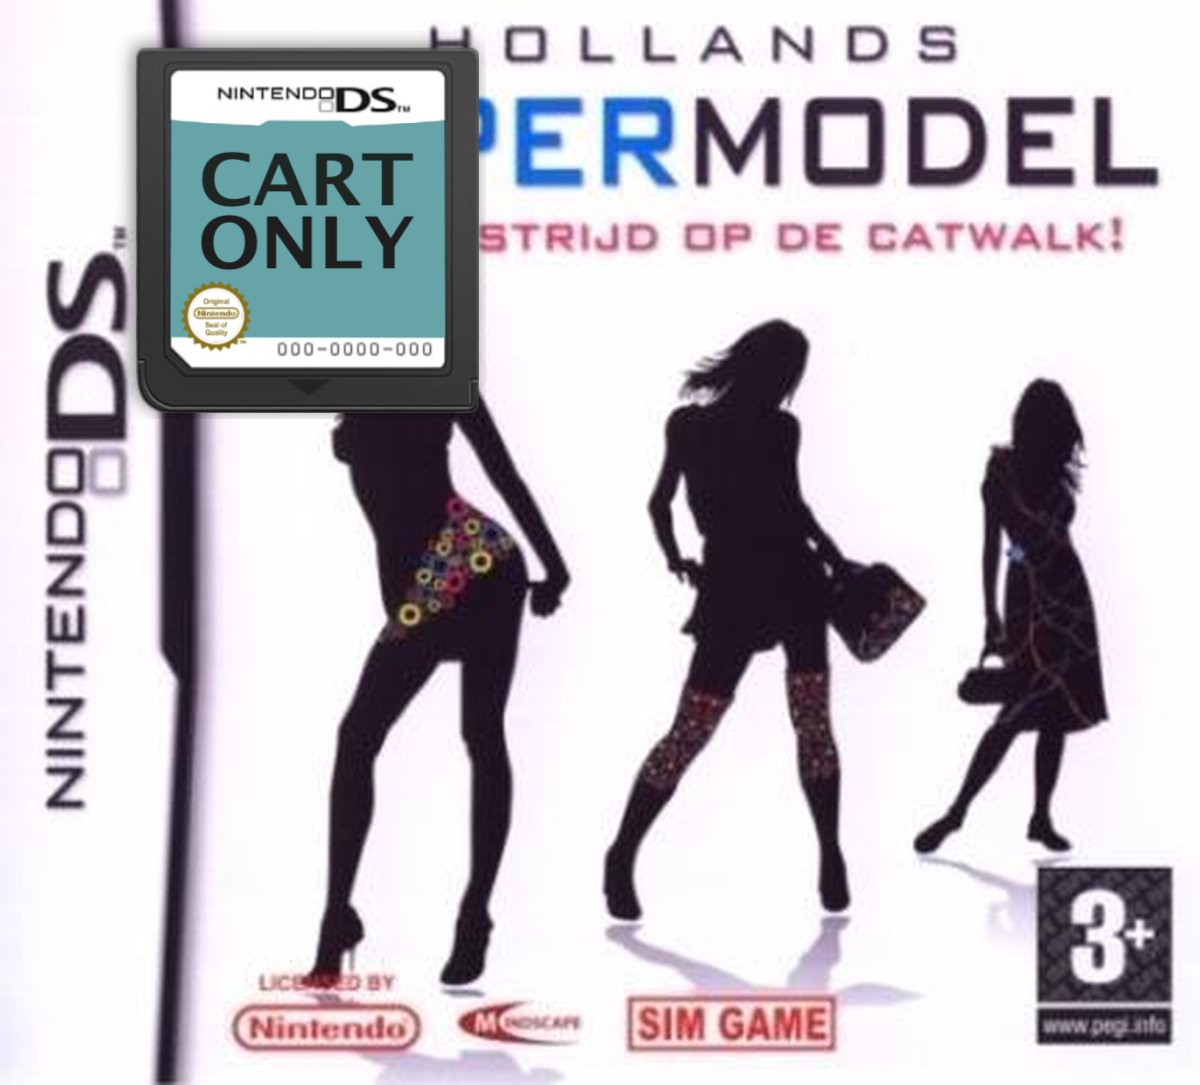 Hollands Super Model: Win De Strijd Op De Catwalk! - Cart Only - Nintendo DS Games